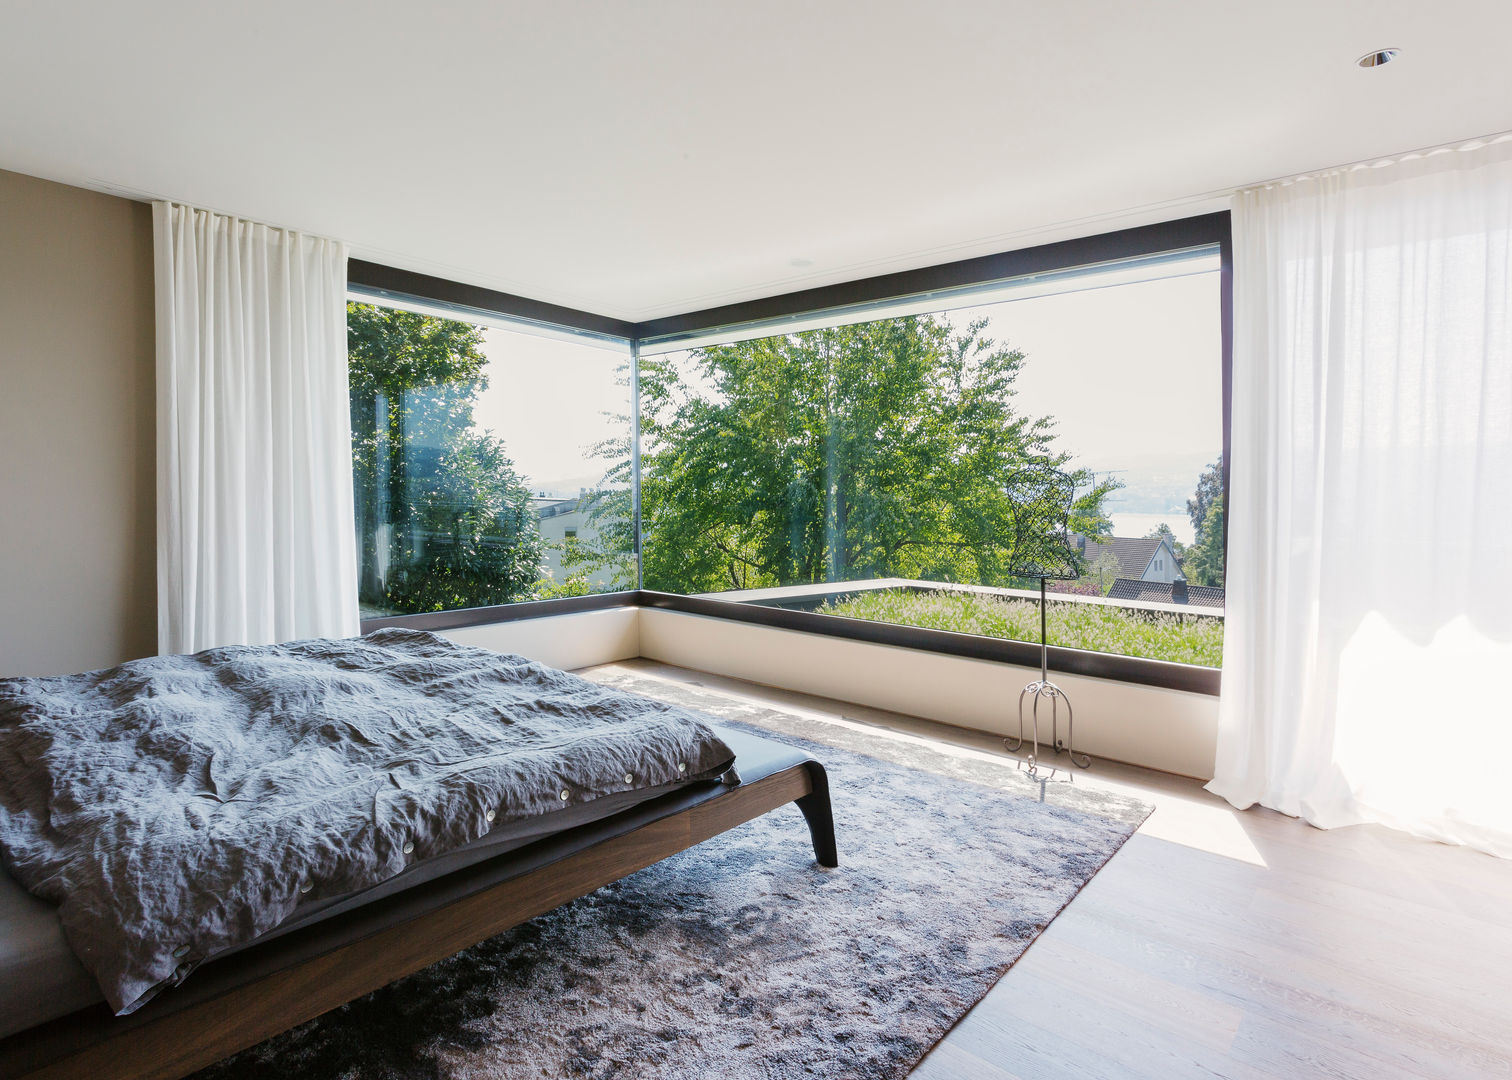 Objekt 336: Traumhaftes Einfamilienhaus mit Panoramablick , meier architekten zürich meier architekten zürich 臥室